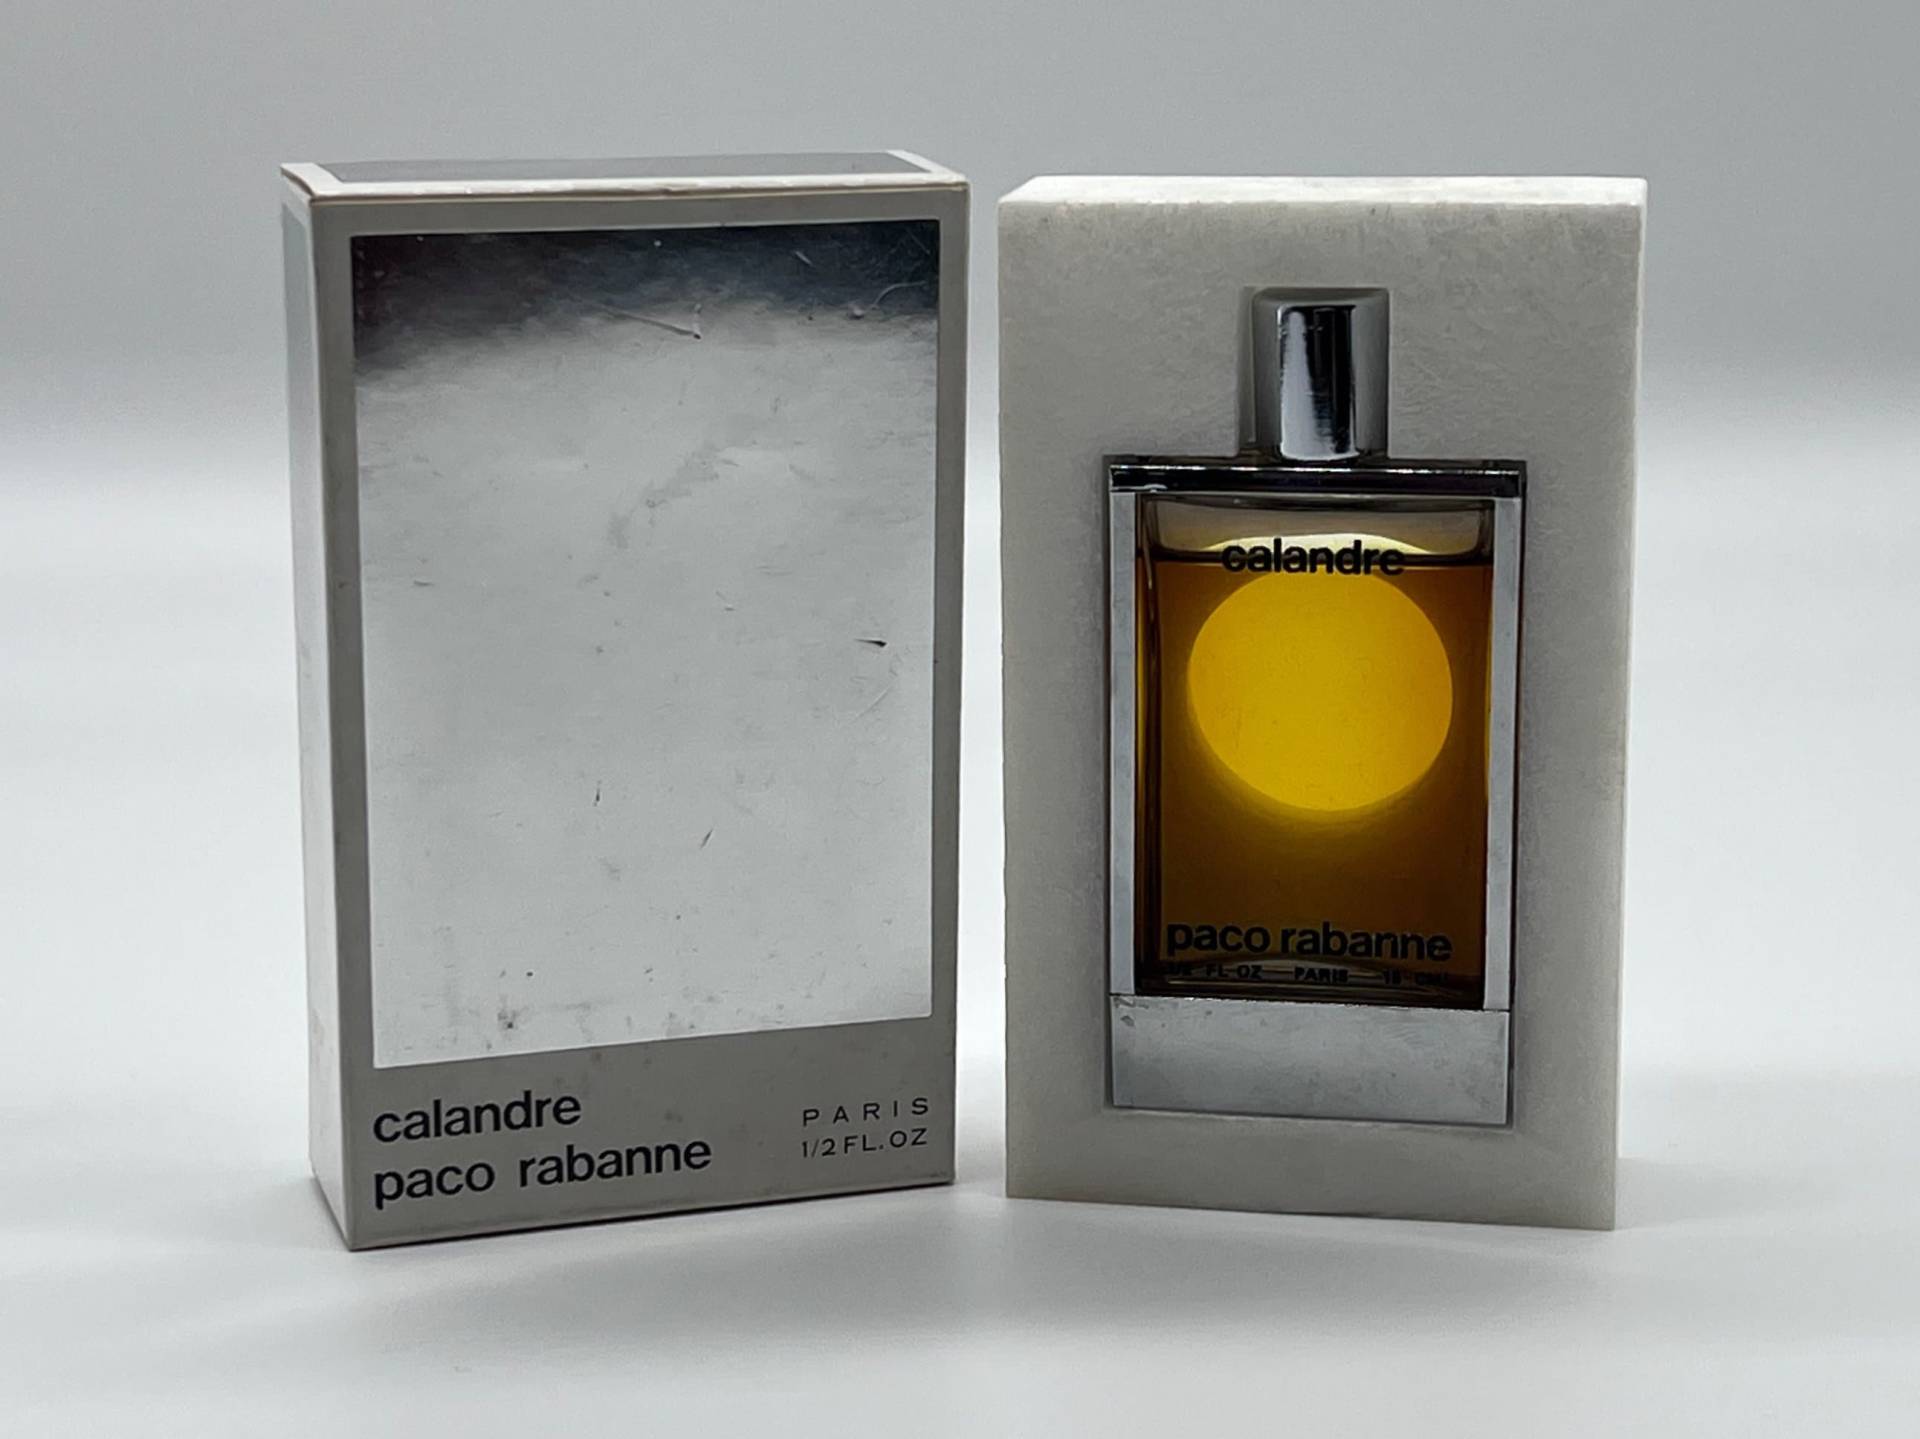 Vintage "Calandre" | 1969 Paco Rabanne Pure Parfum/Extrait 15 Ml/1/2 Us Fl.oz. Splash | No Spray Rare Women Fragrance von MyVintageGadgets